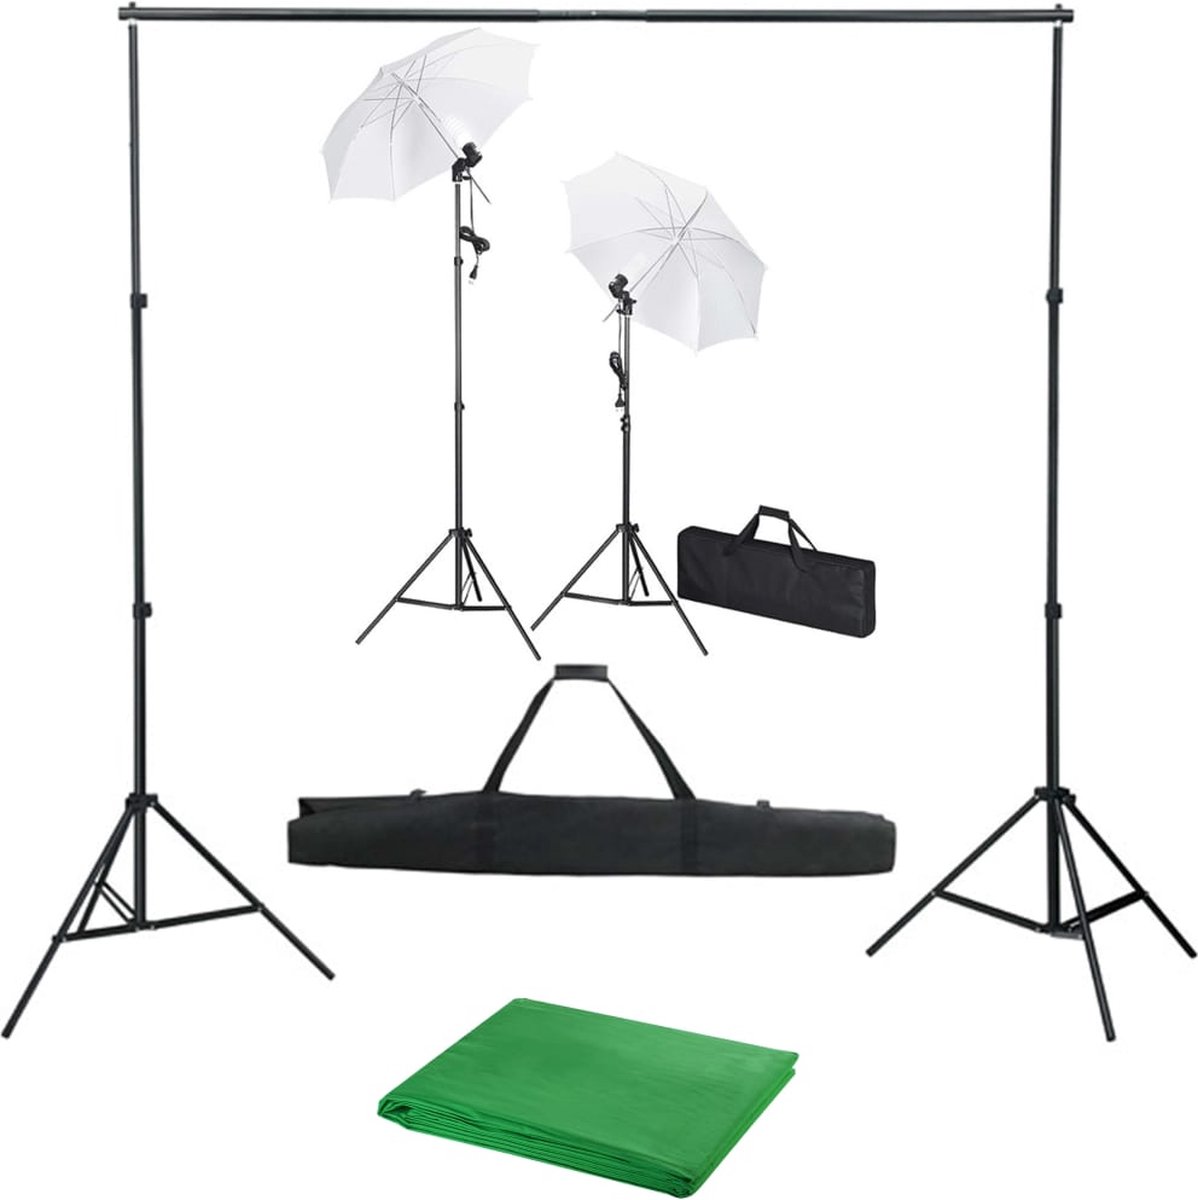 VidaLife Fotostudioset met achtergrond, lampen en paraplu's